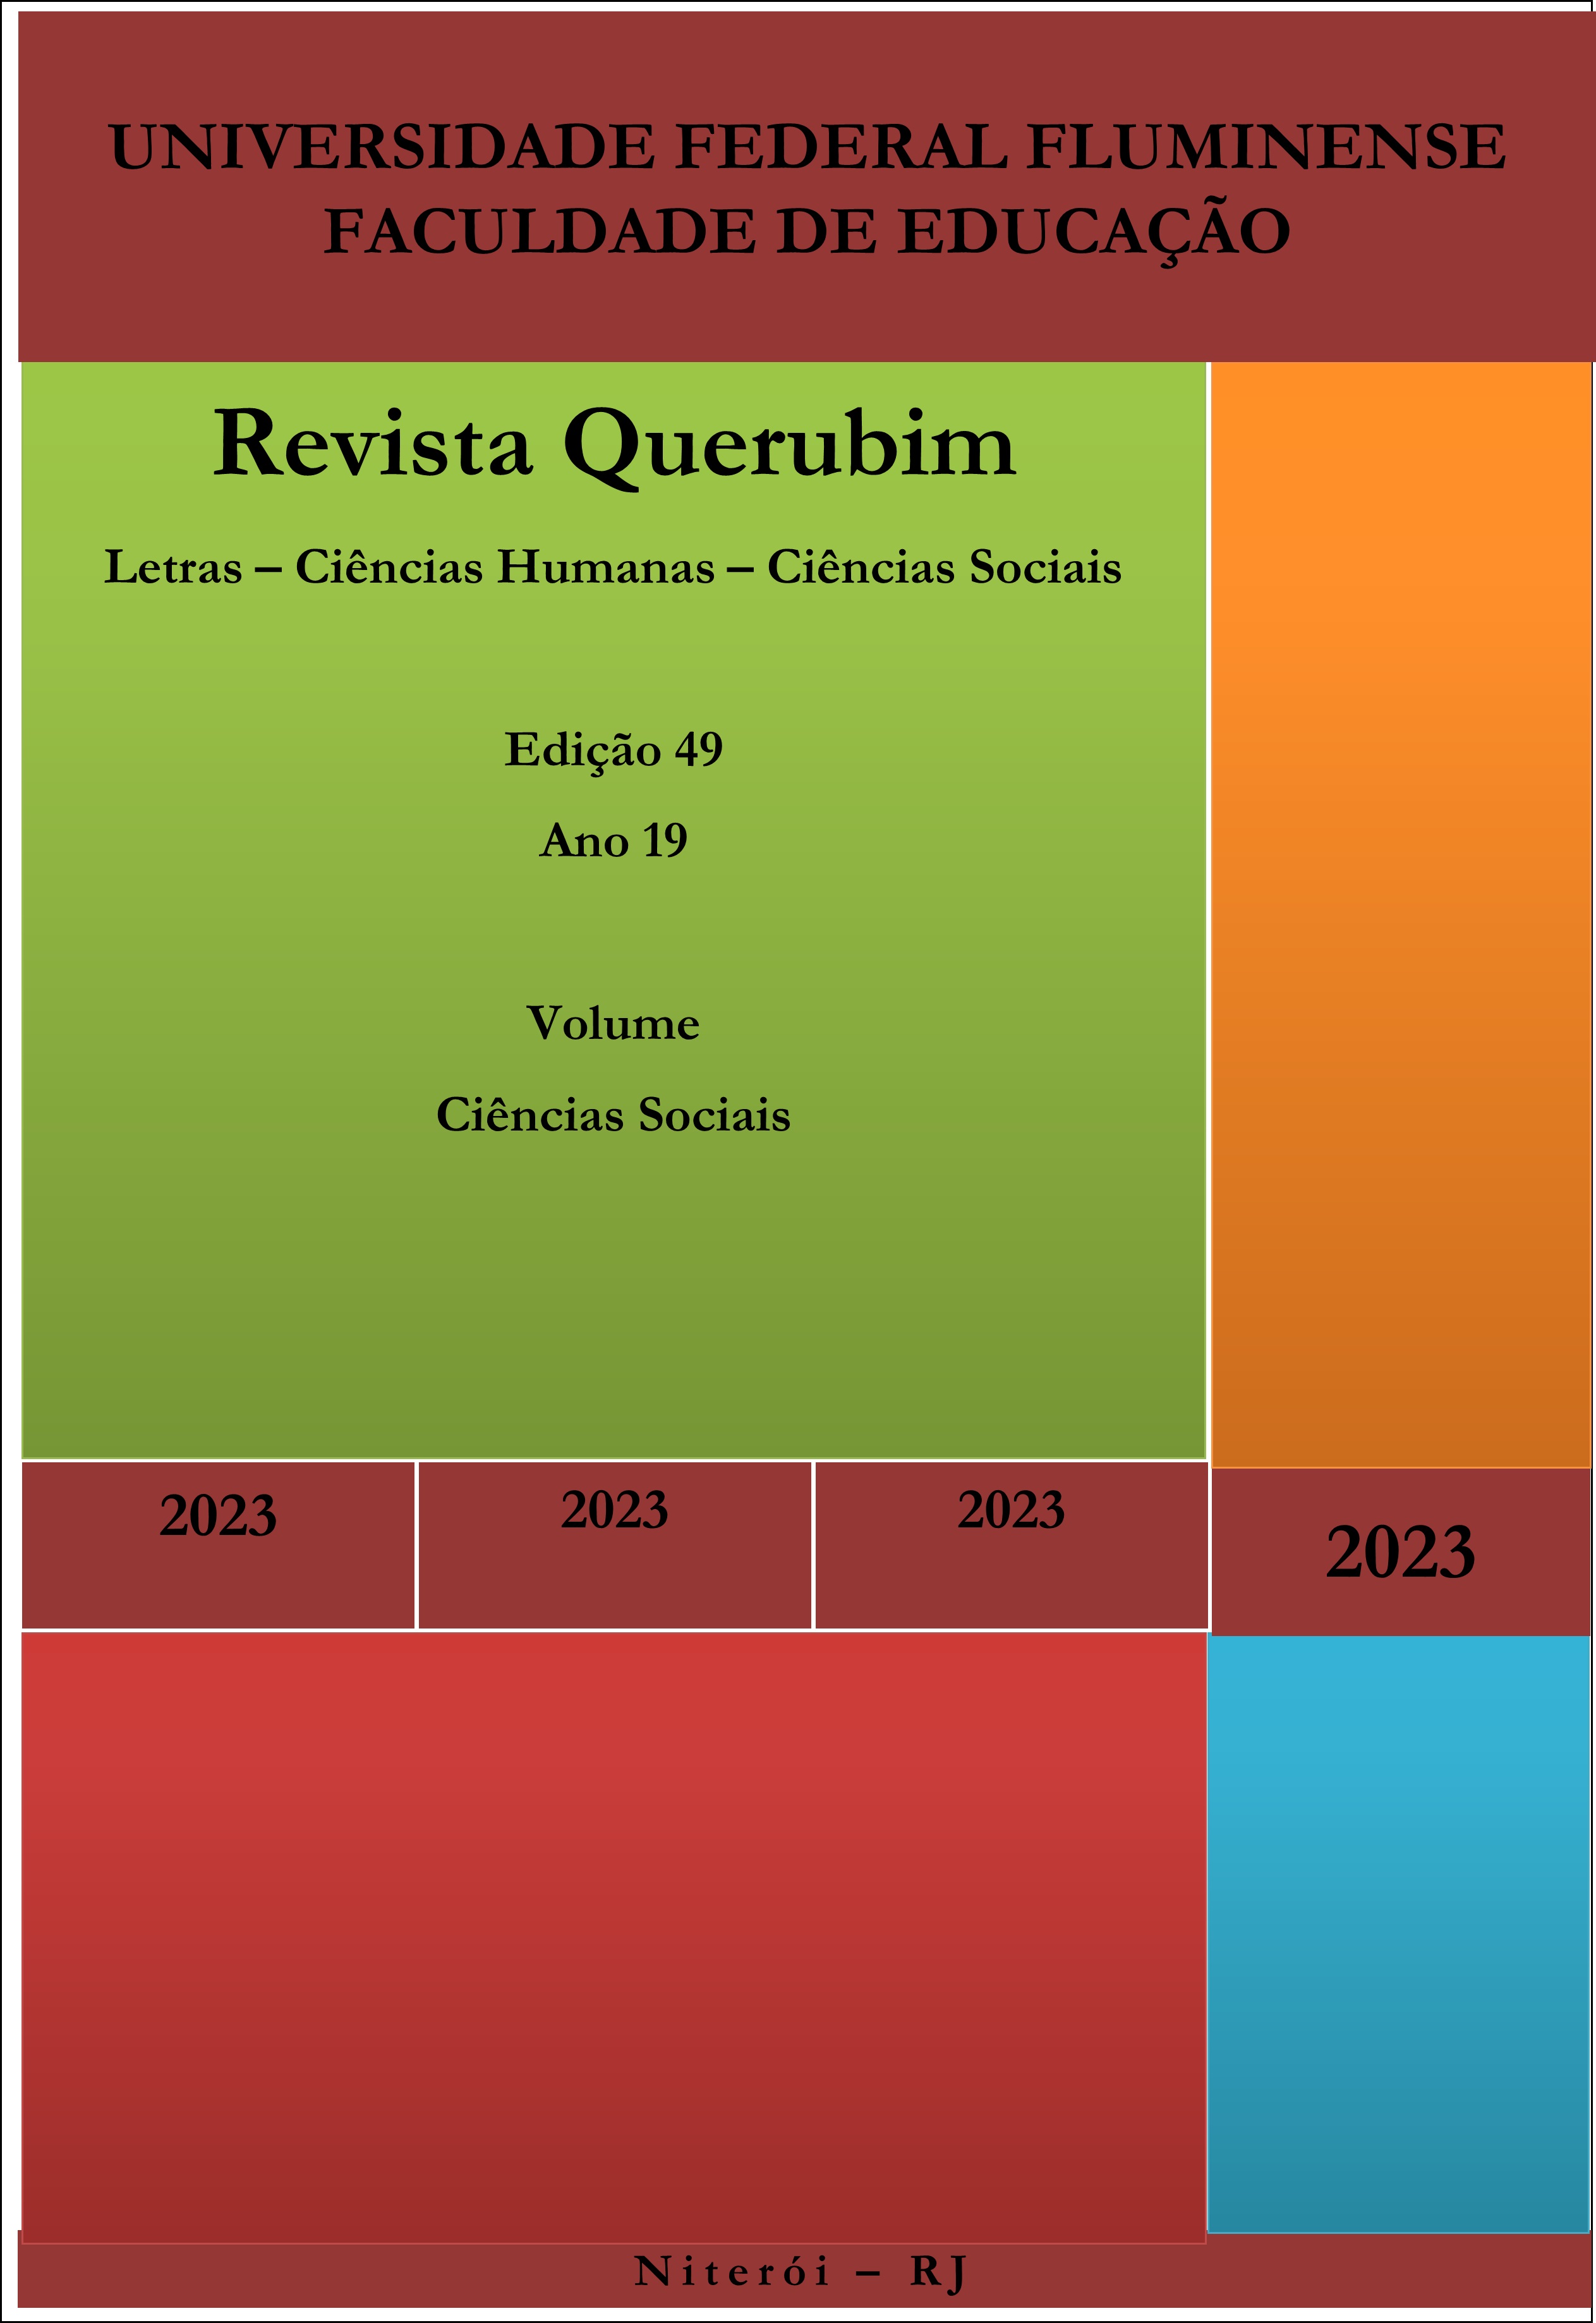 					View Vol. 3 No. 49 (2023): Revista Querubim 49 v 3 C. Sociais
				